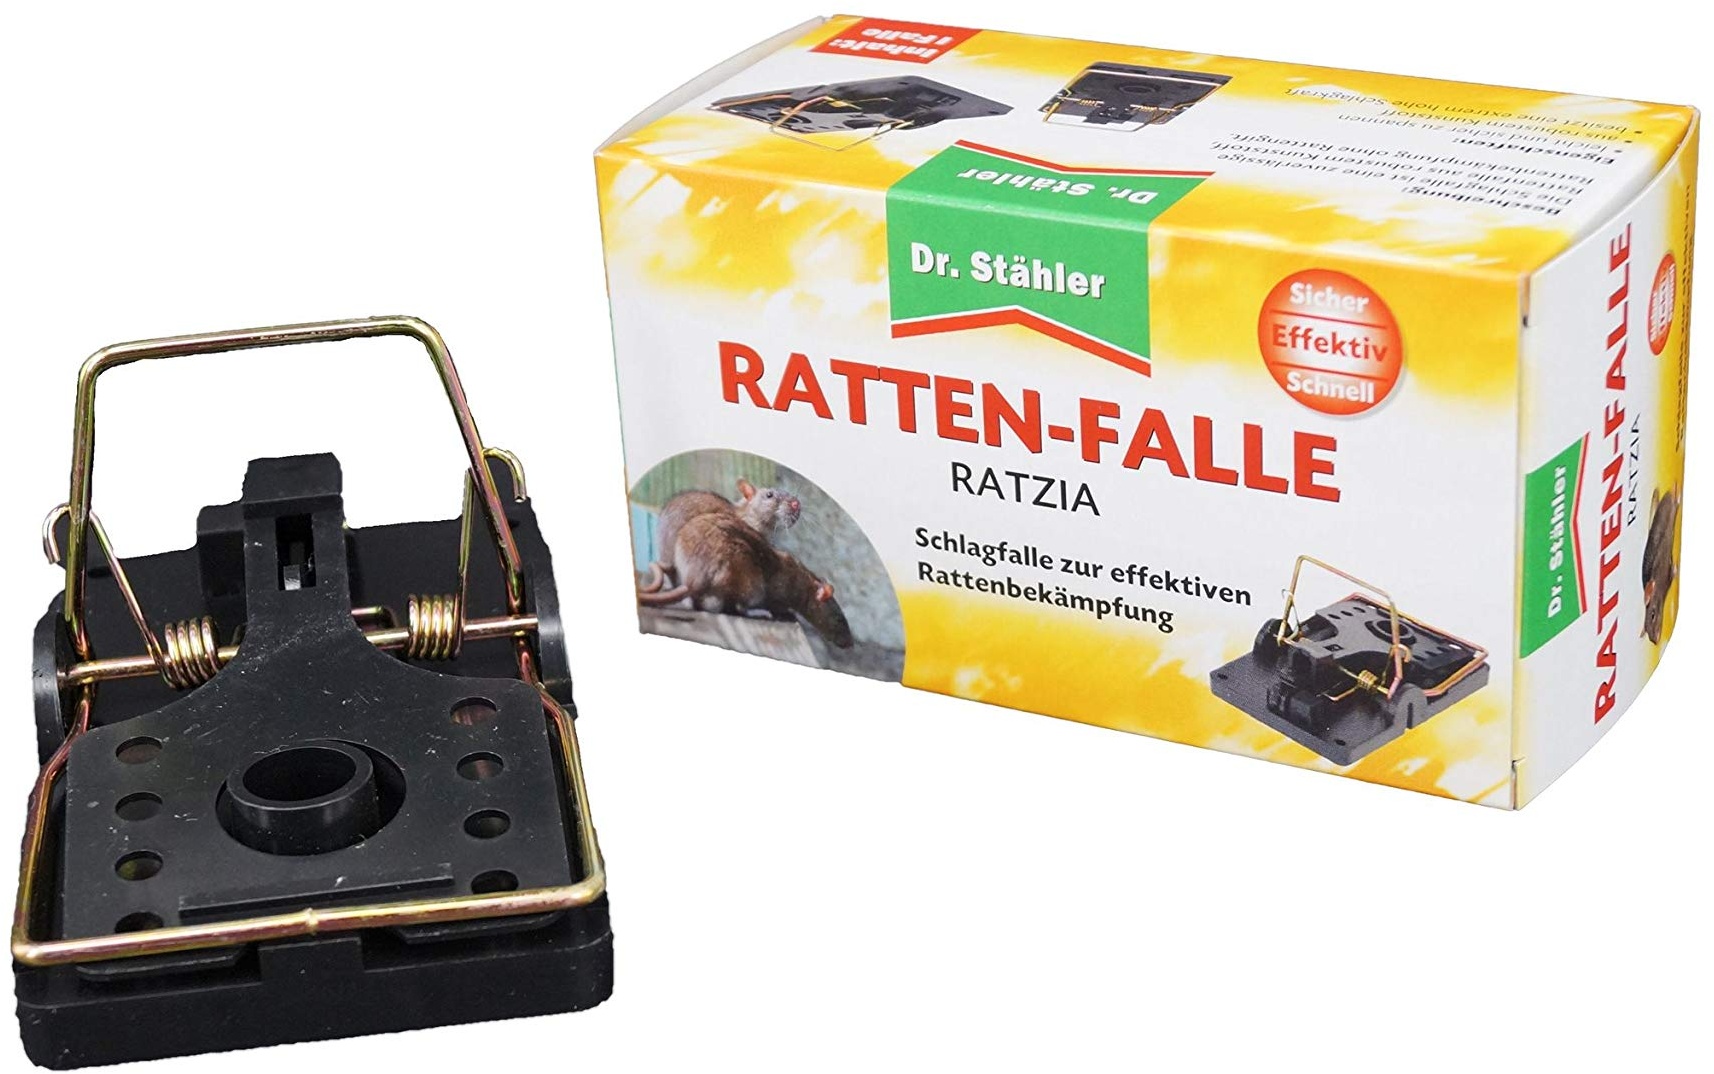 Dr. Stähler Ratten-Falle, 1 Stück